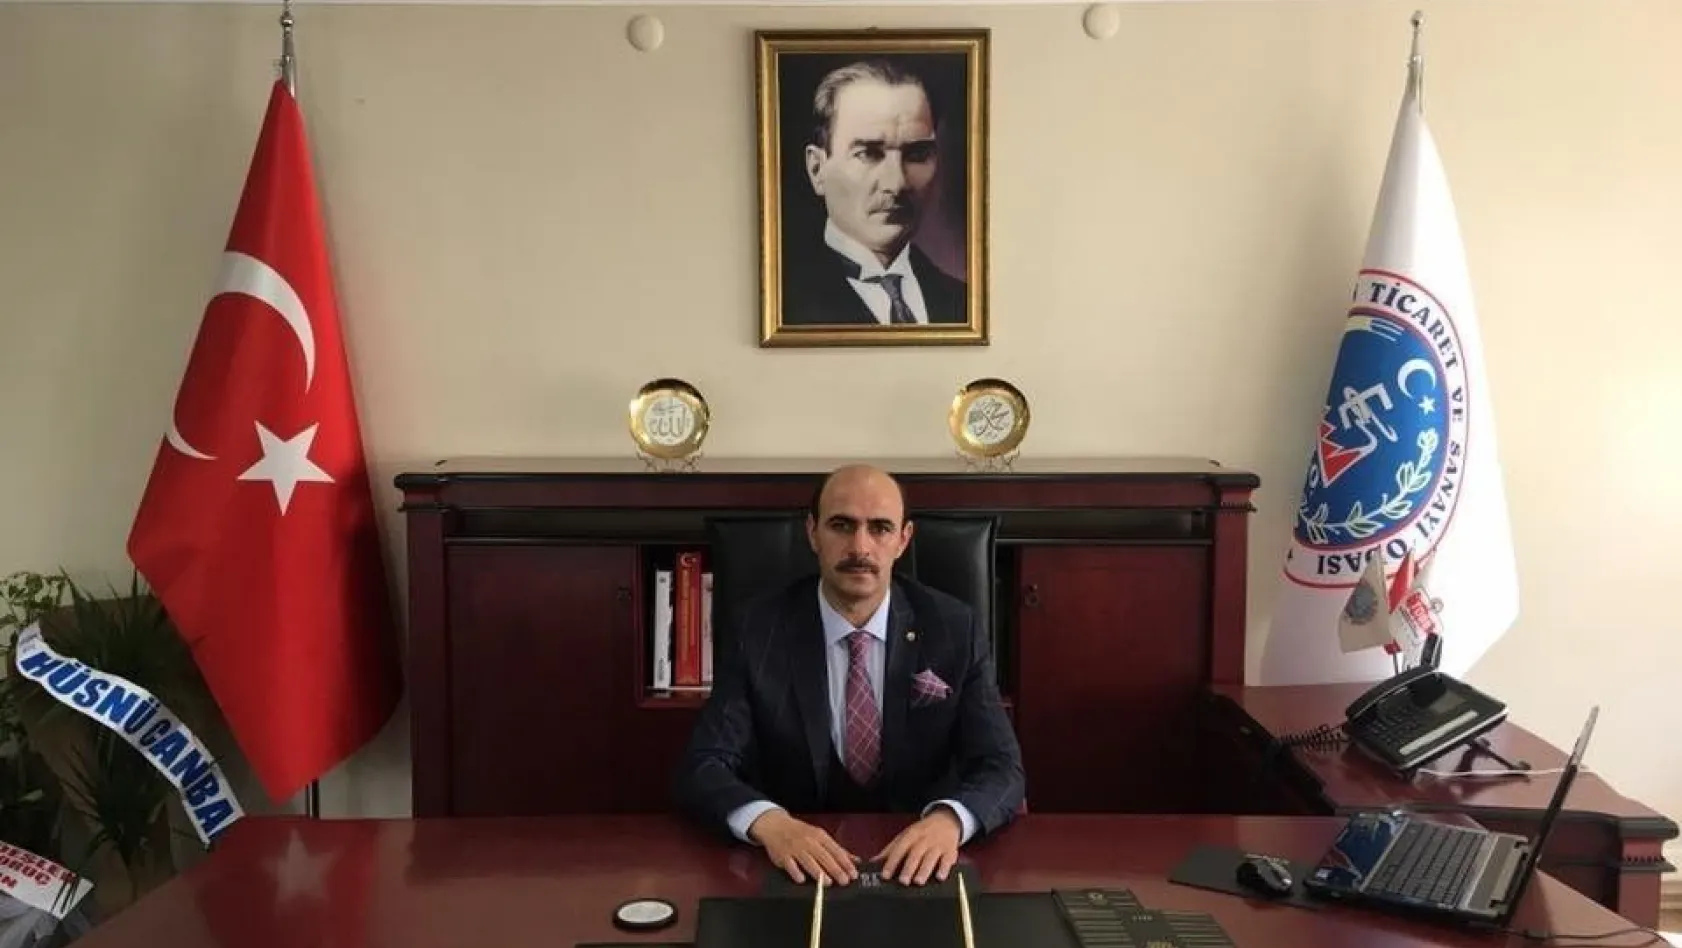 ETSO'nun Yeni Başkanı Hayati Gürkan Oldu
